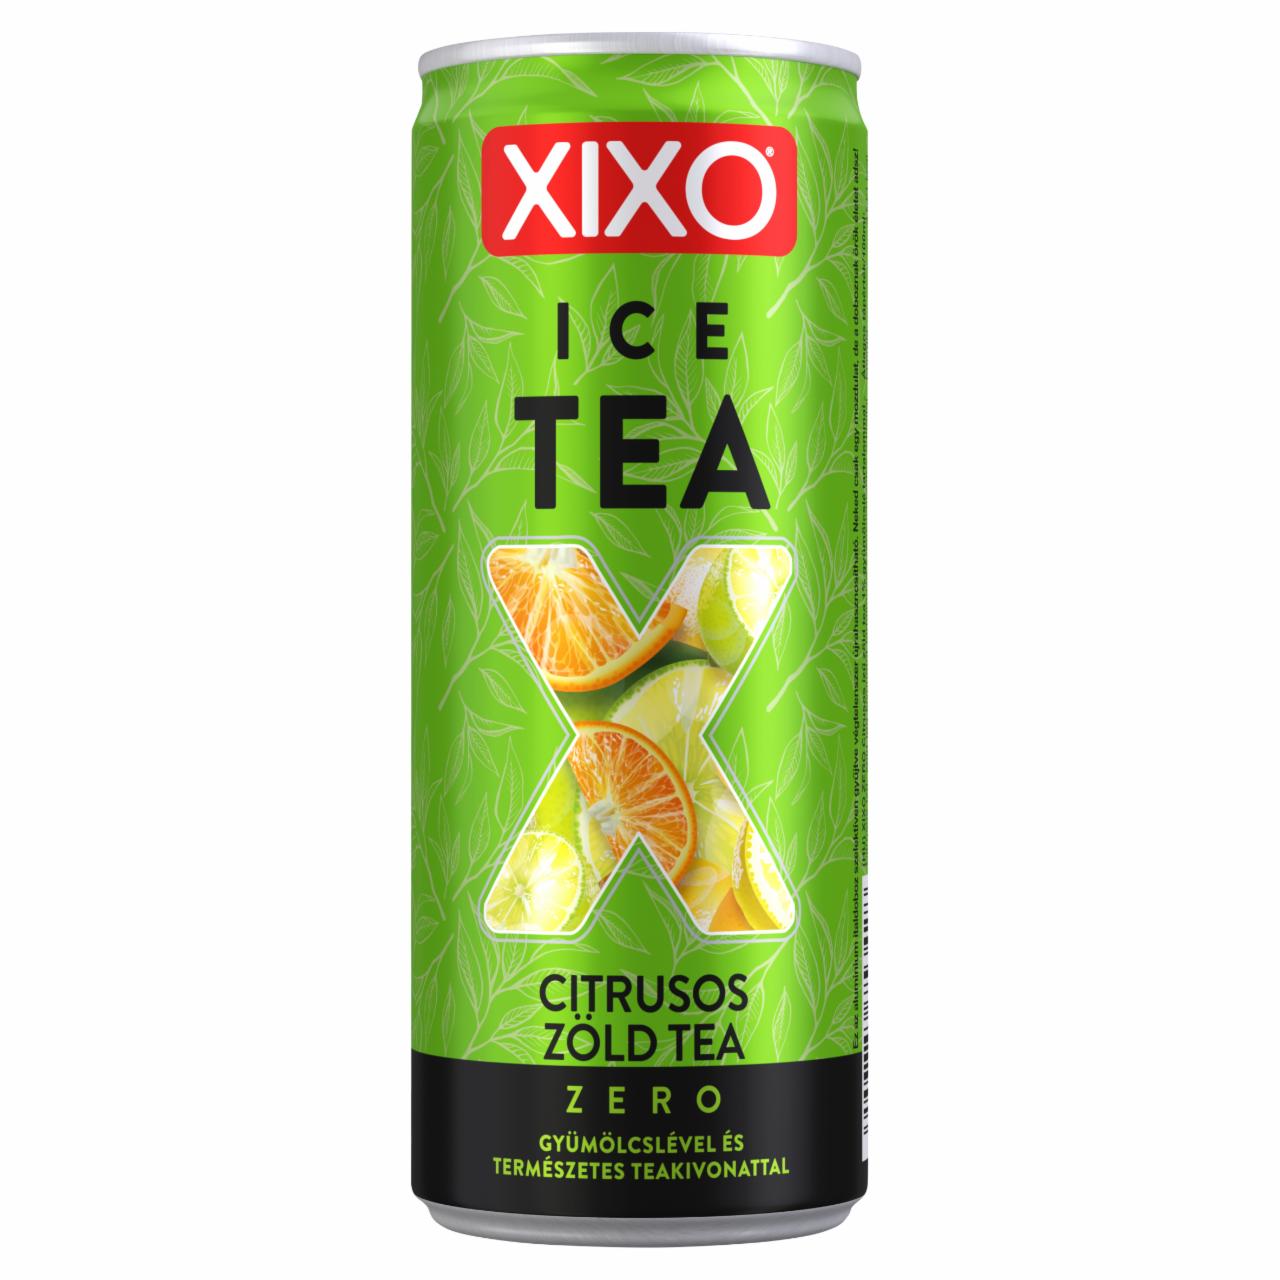 Képek - XIXO Ice Tea Zero citrusos zöld tea 250 ml